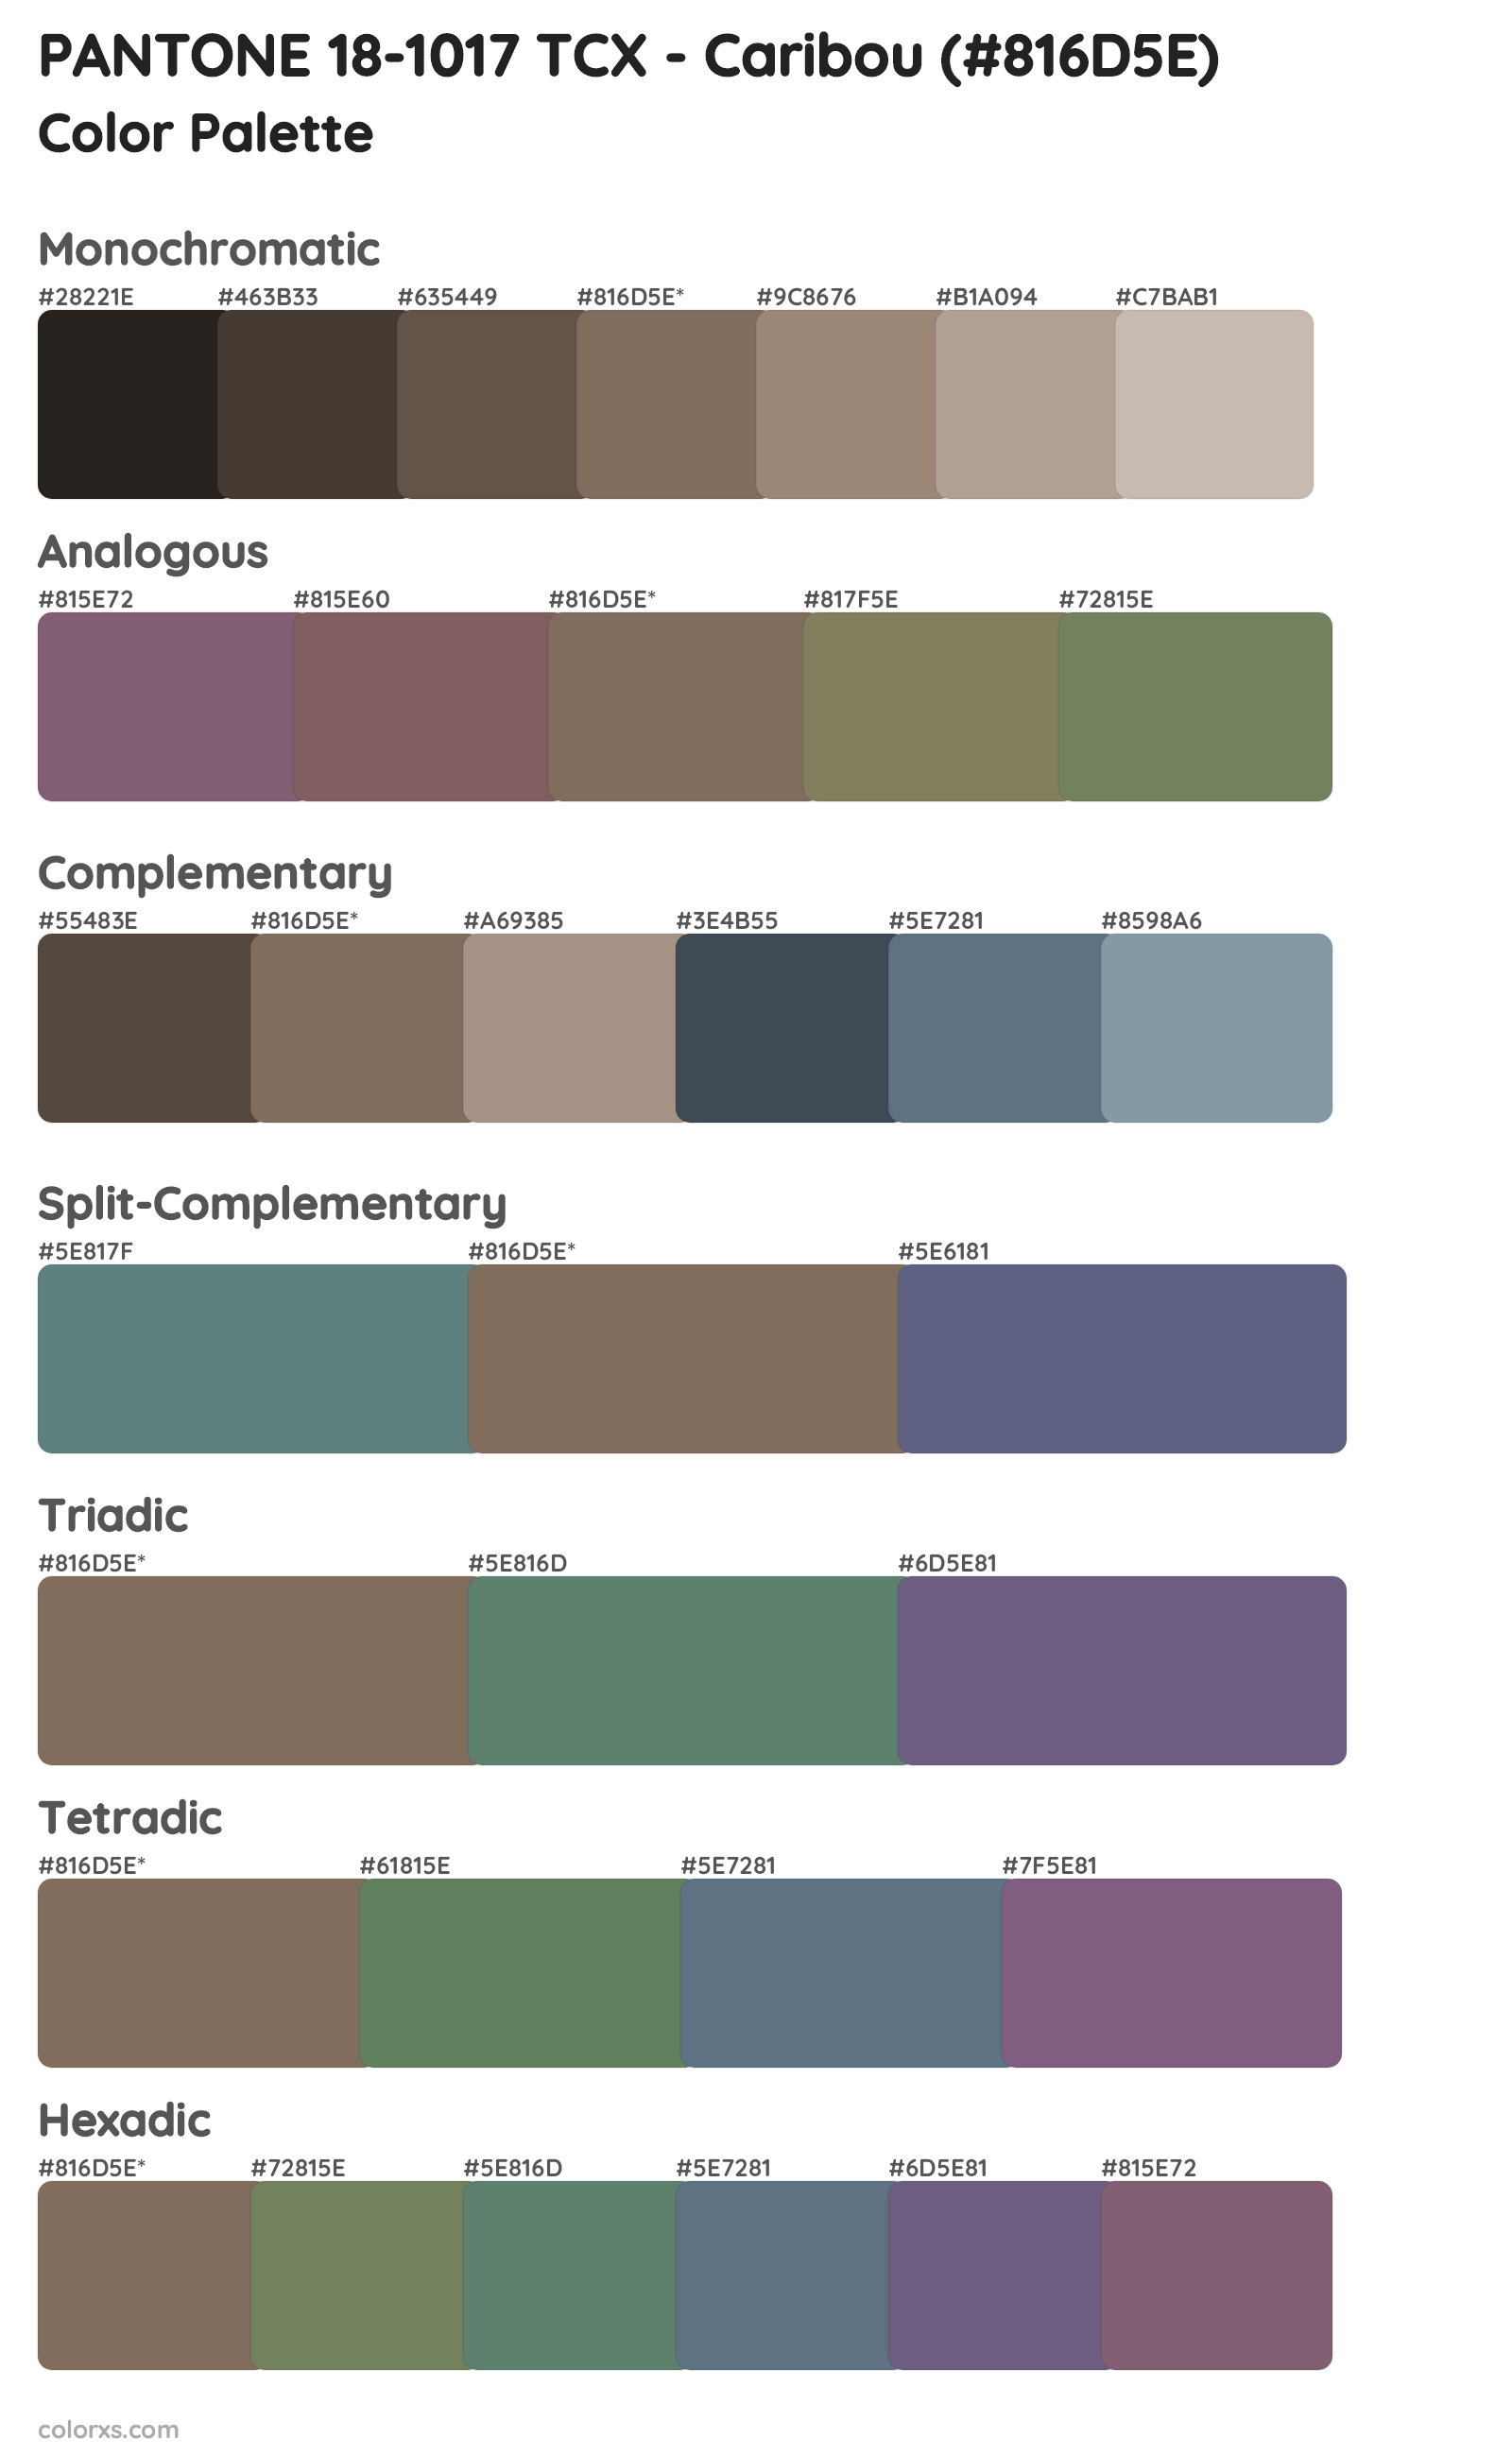 PANTONE 18-1017 TCX - Caribou Color Scheme Palettes